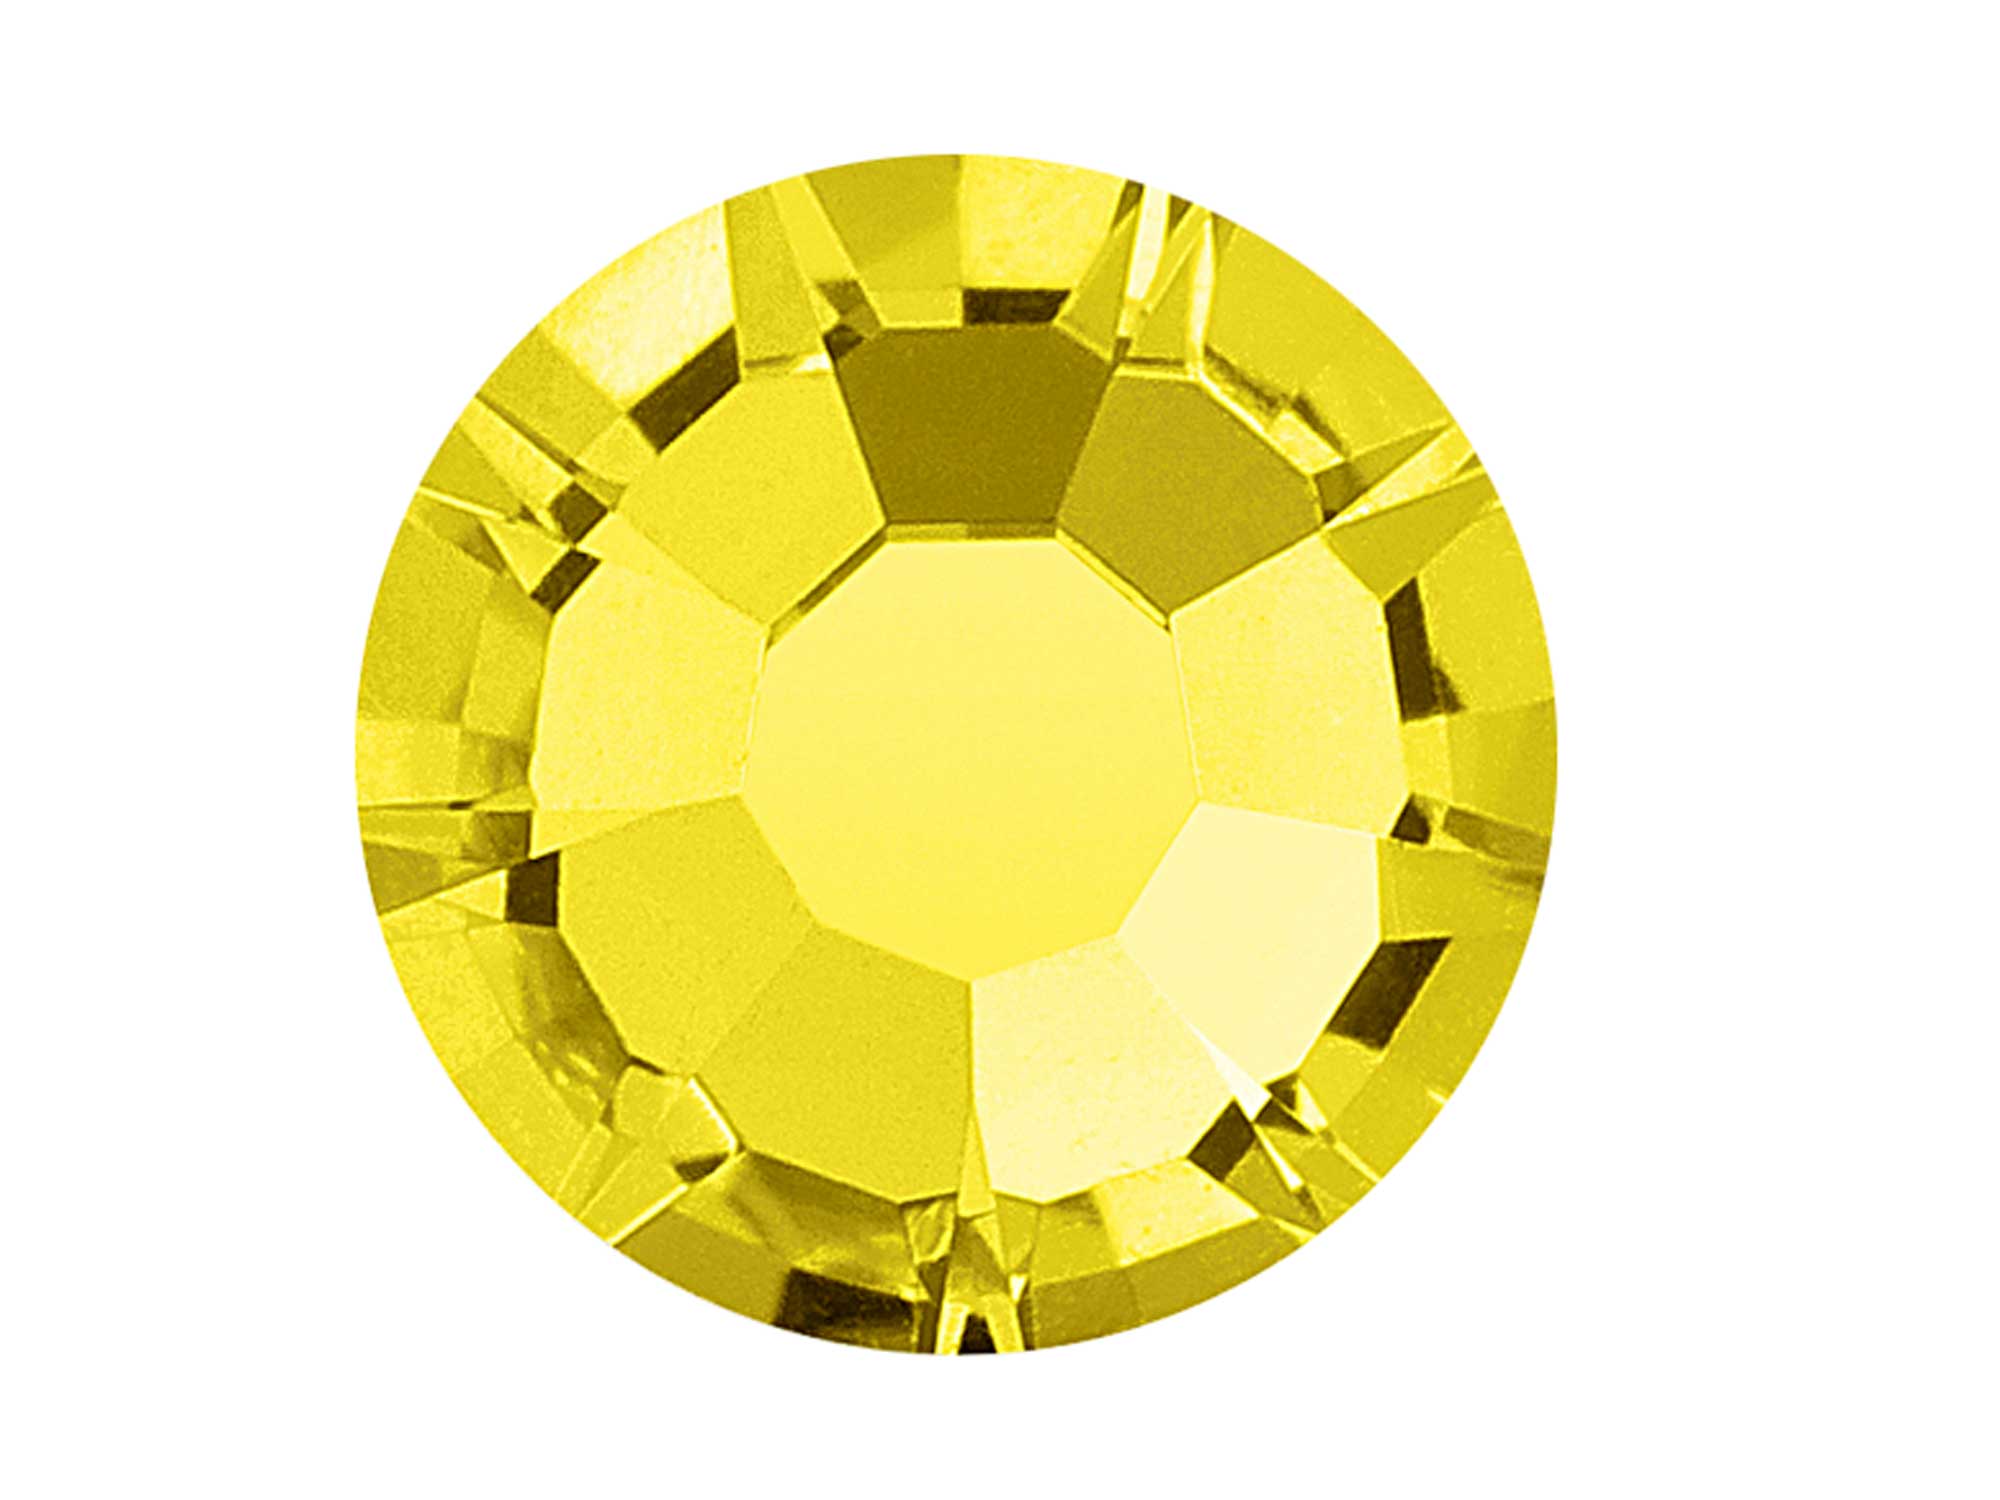 Citrine, Preciosa VIVA or MAXIMA Chaton Roses (Rhinestone Flatbacks), Genuine Czech Crystals, rich yellow color